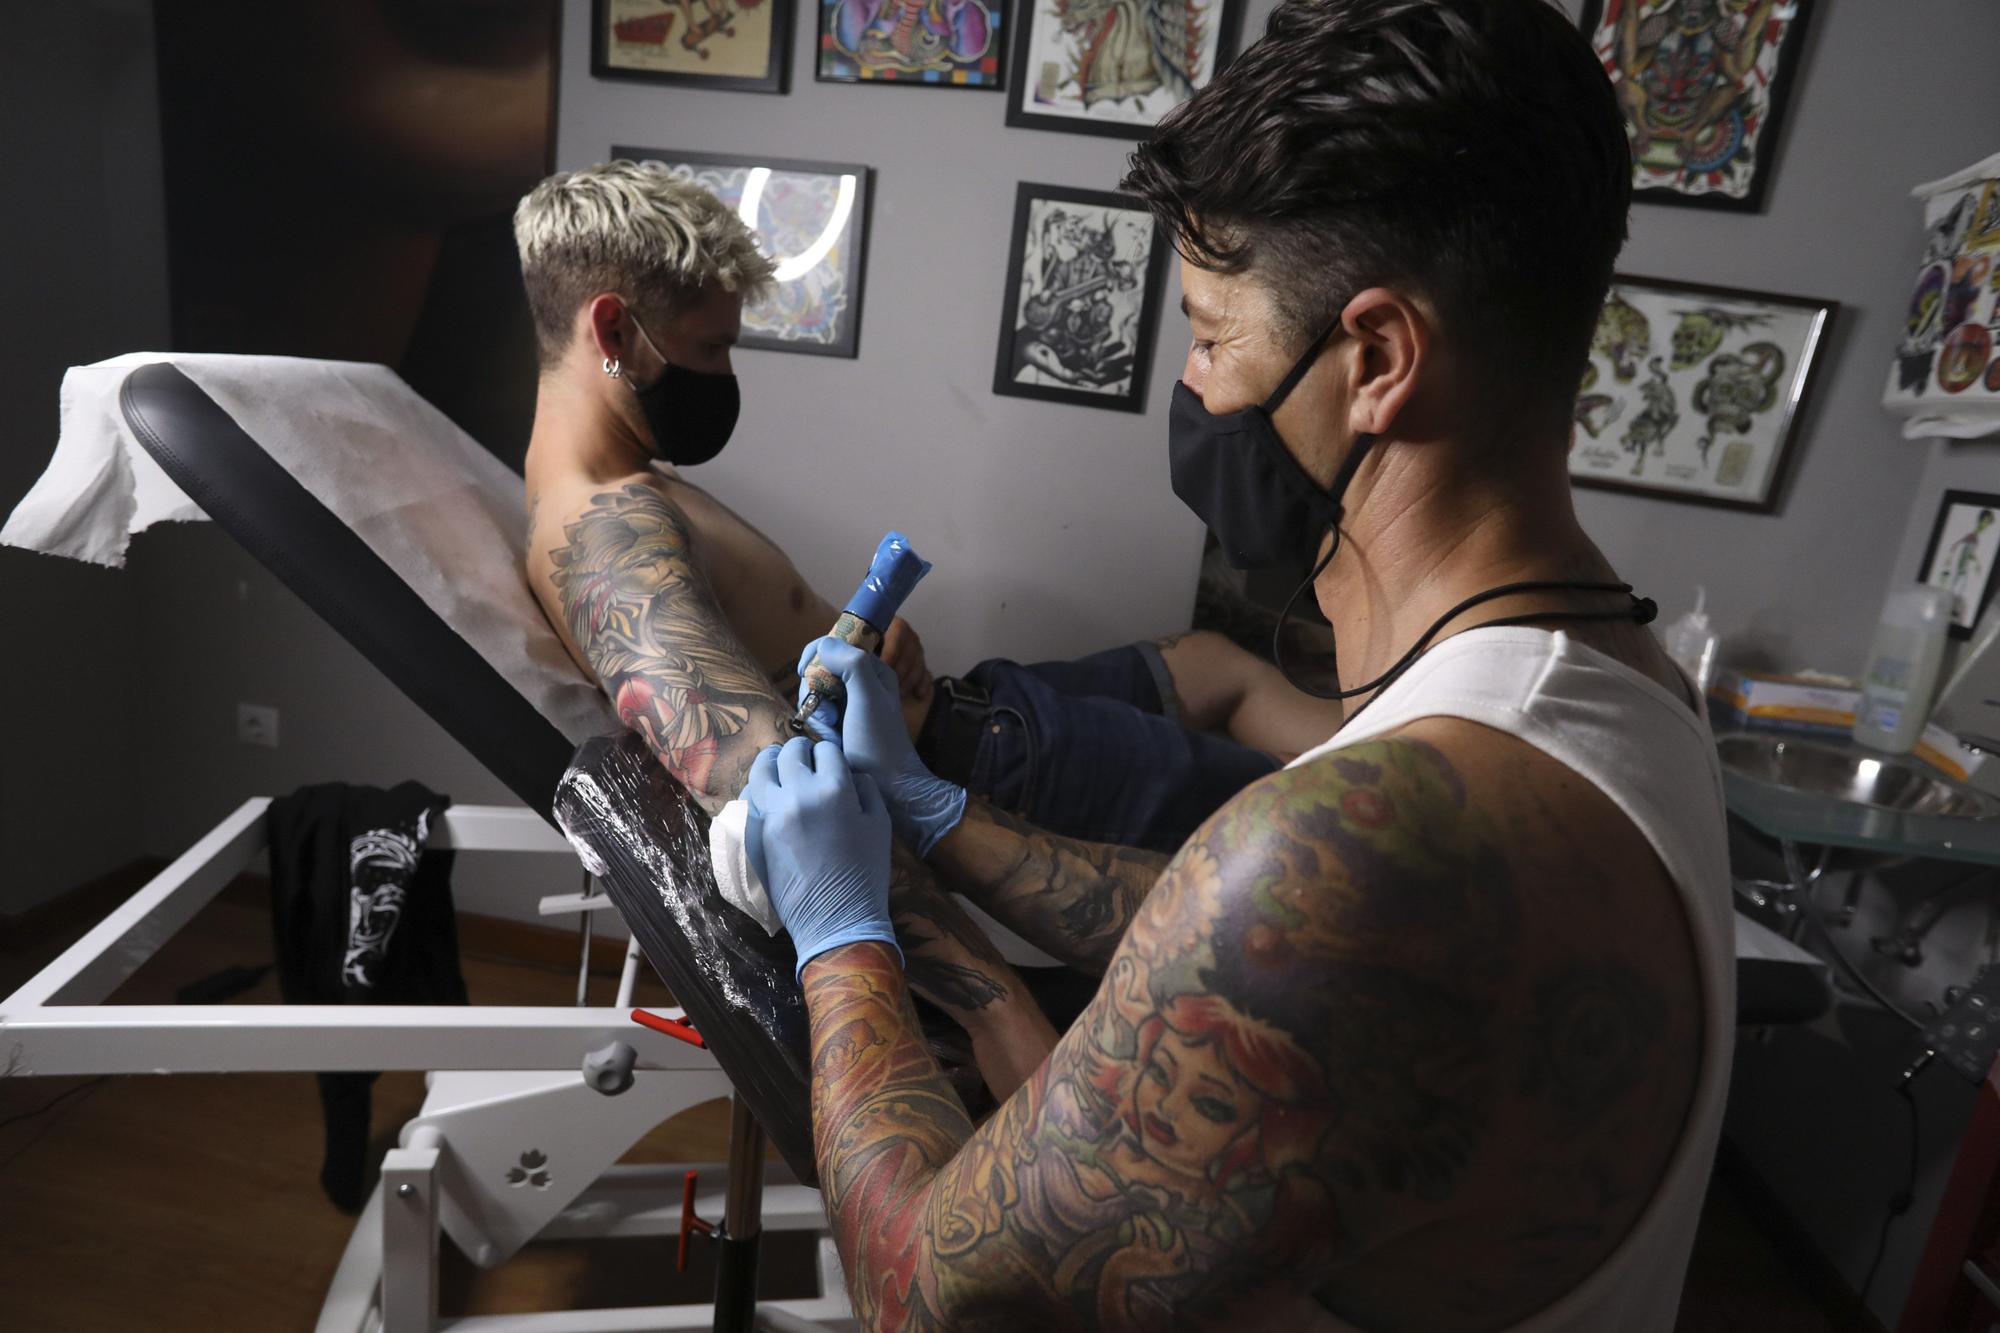 "Resiliencia": el mensaje que llega a los tatuajes tras la pandemia